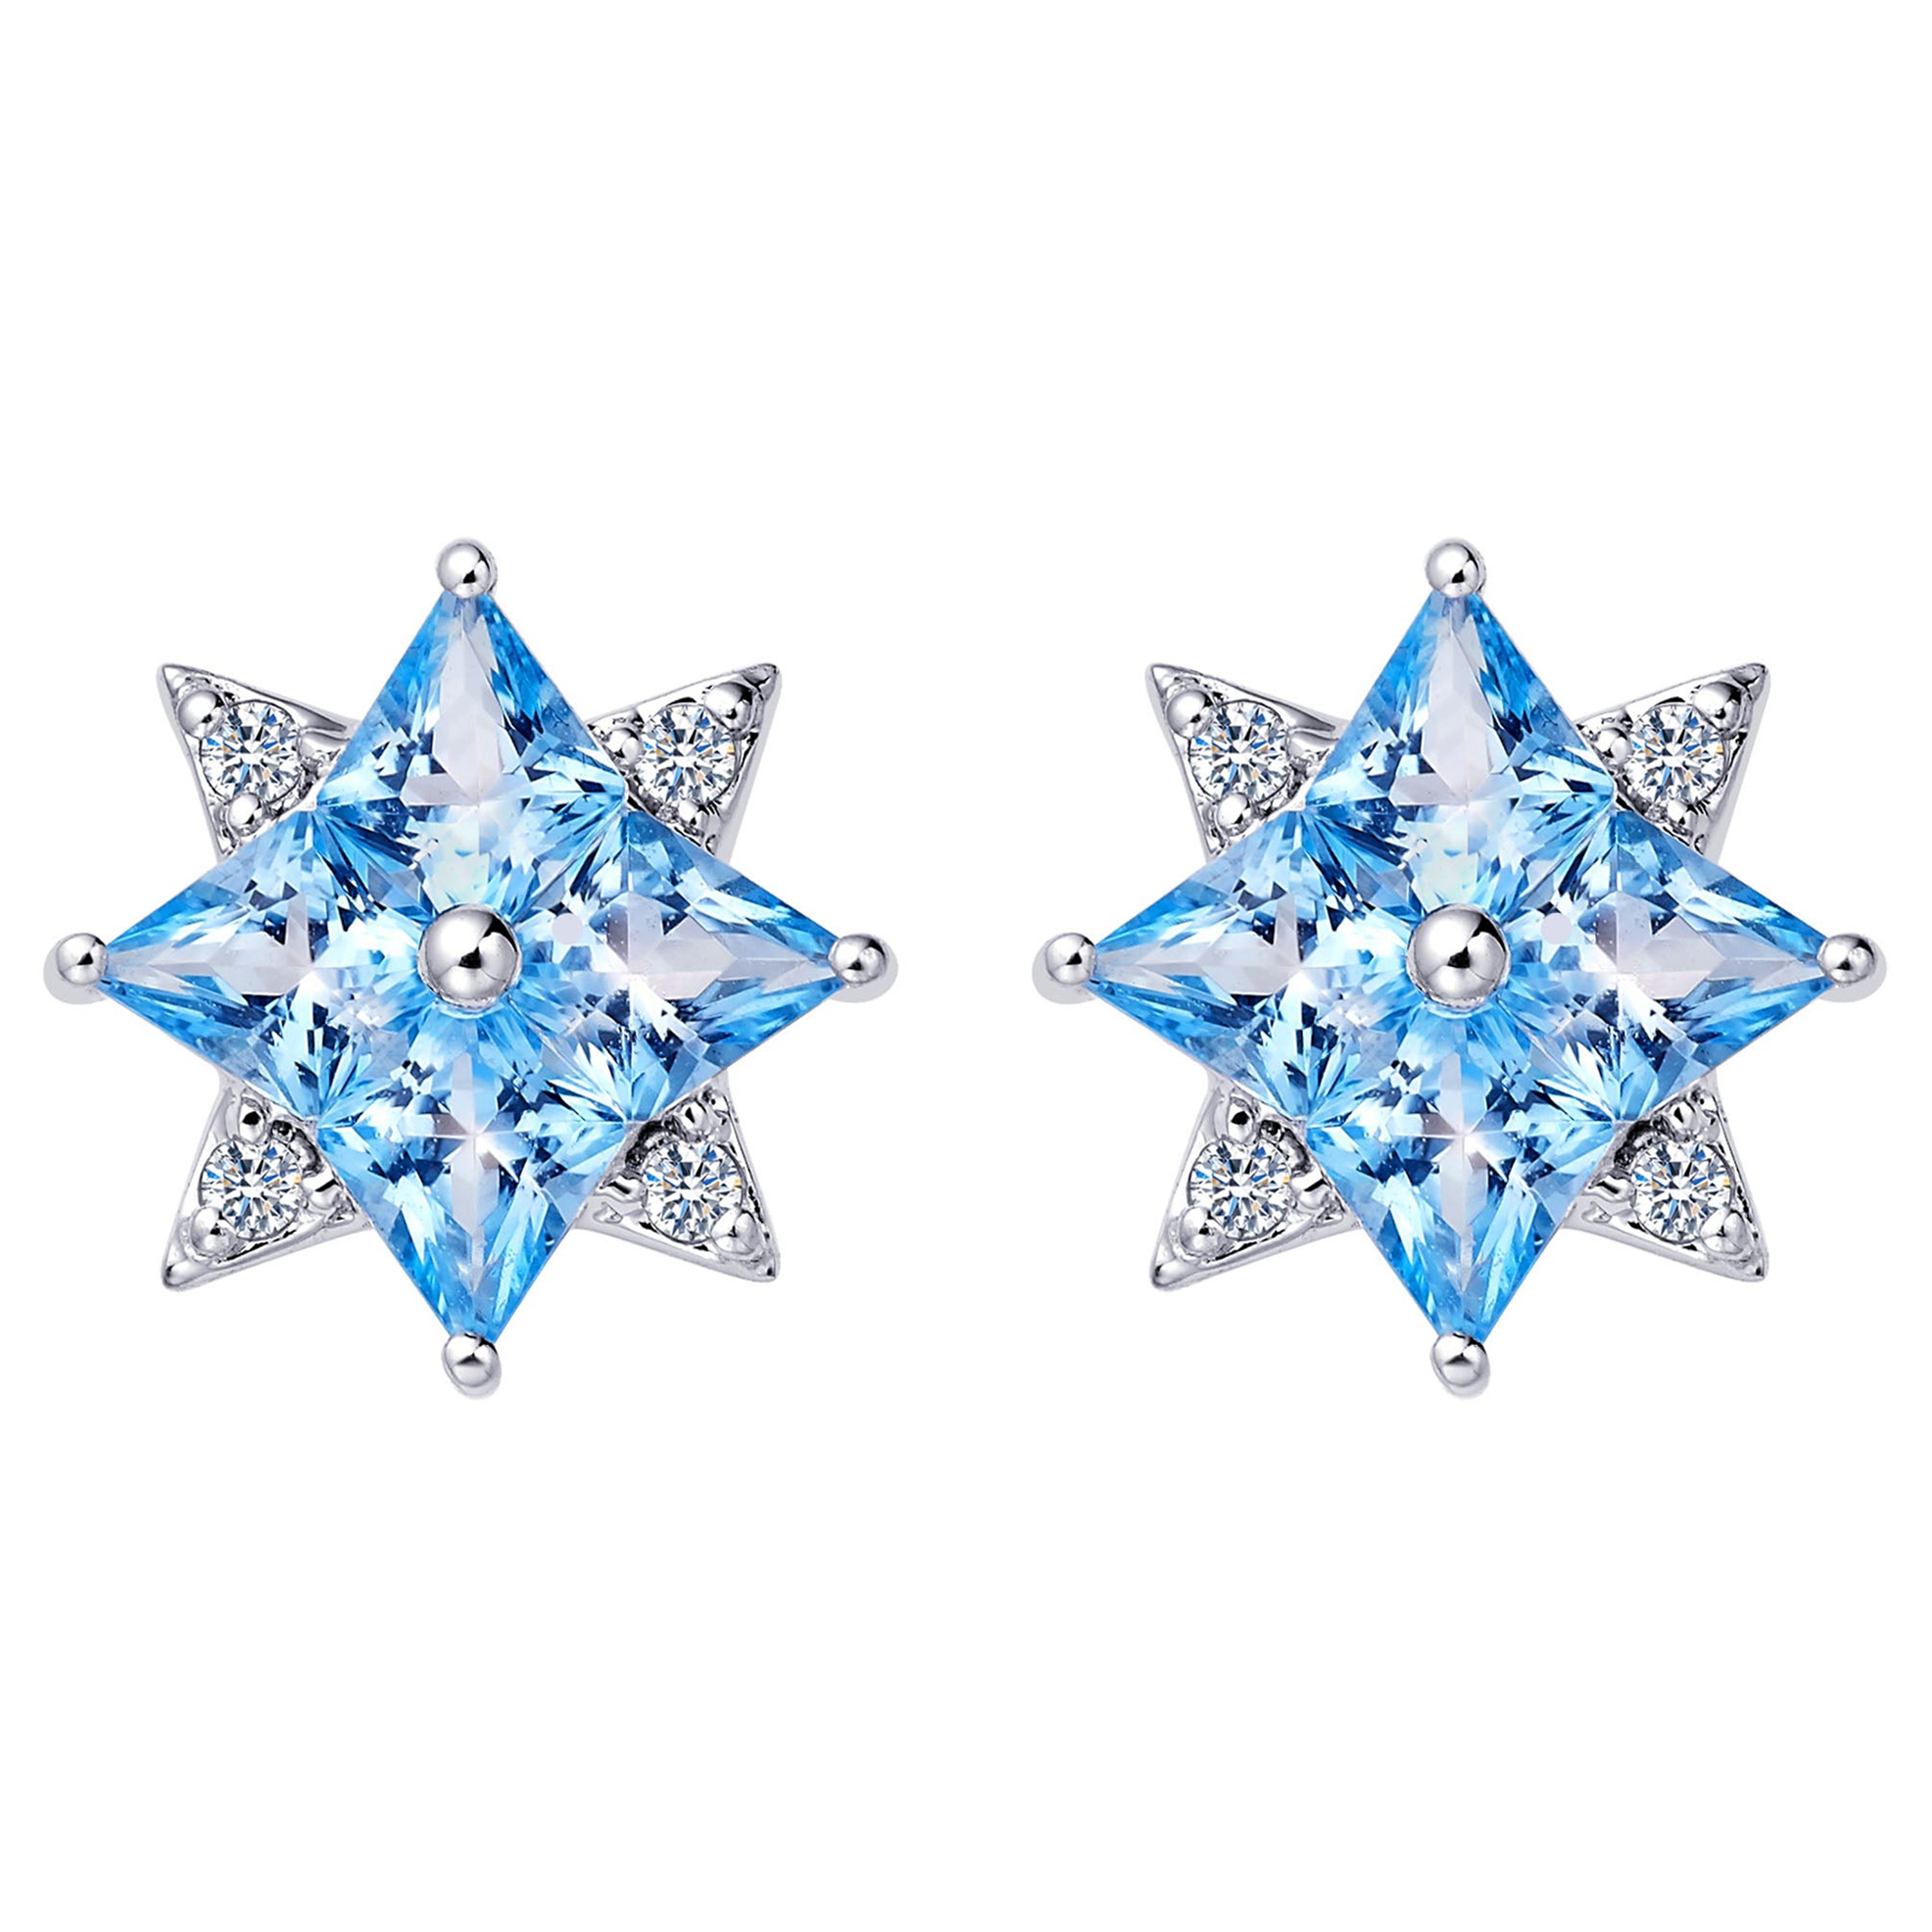 Fei Liu Blue Topaz Cubic Zirconia Sterling Silver Stud Earrings